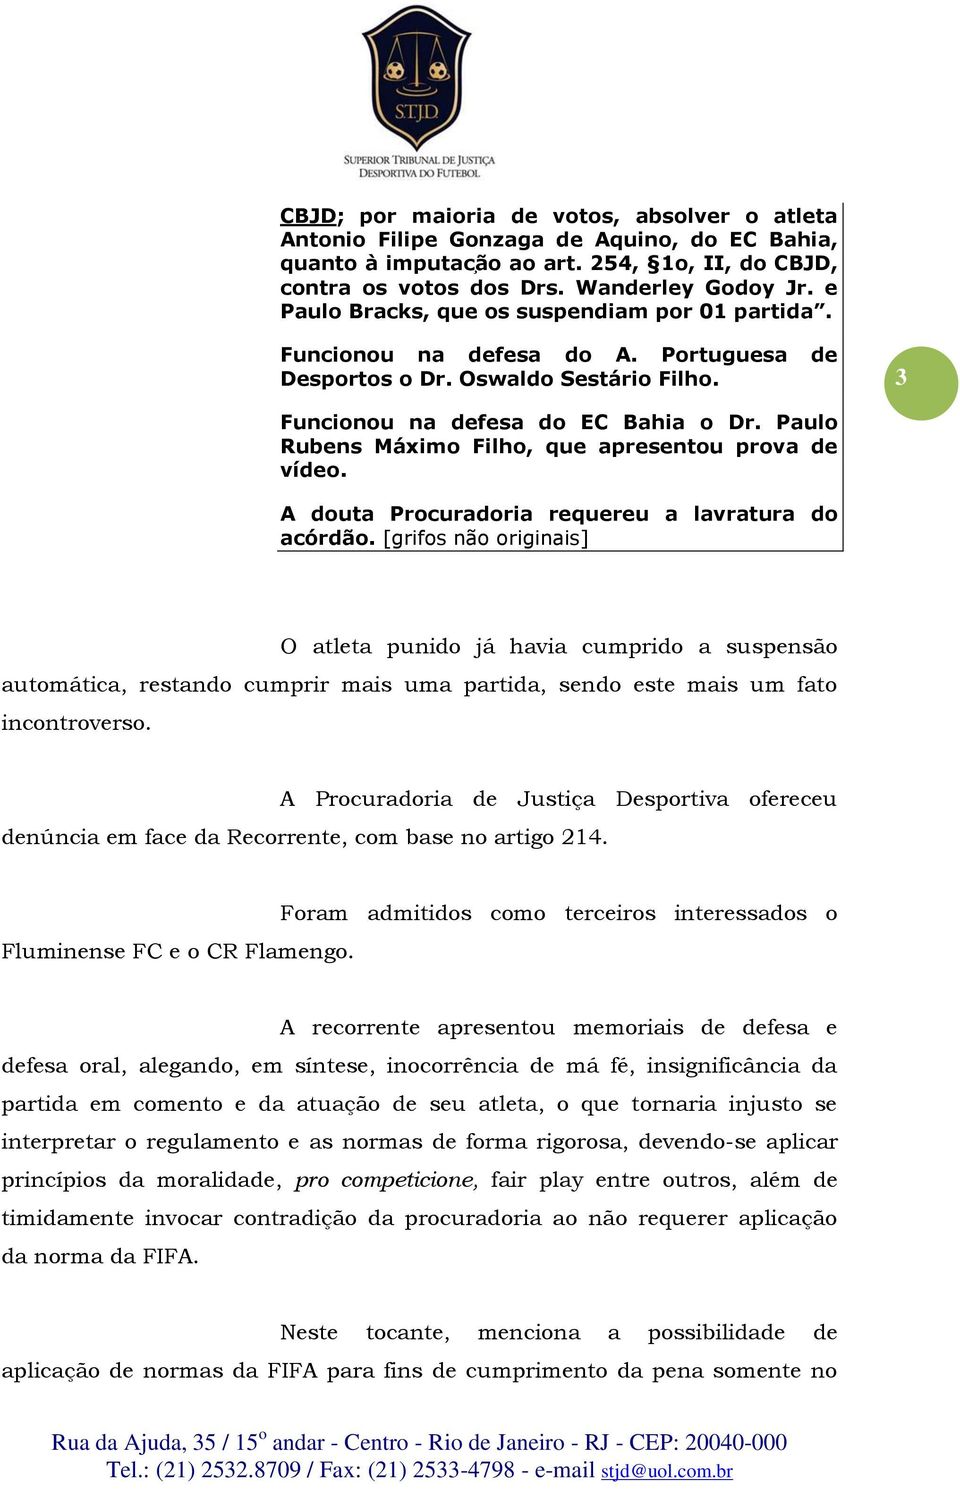 A Procuradoria de Justiça Desportiva ofereceu denúncia em face da Recorrente, com base no artigo 214. Fluminense FC e o CR Flamengo.